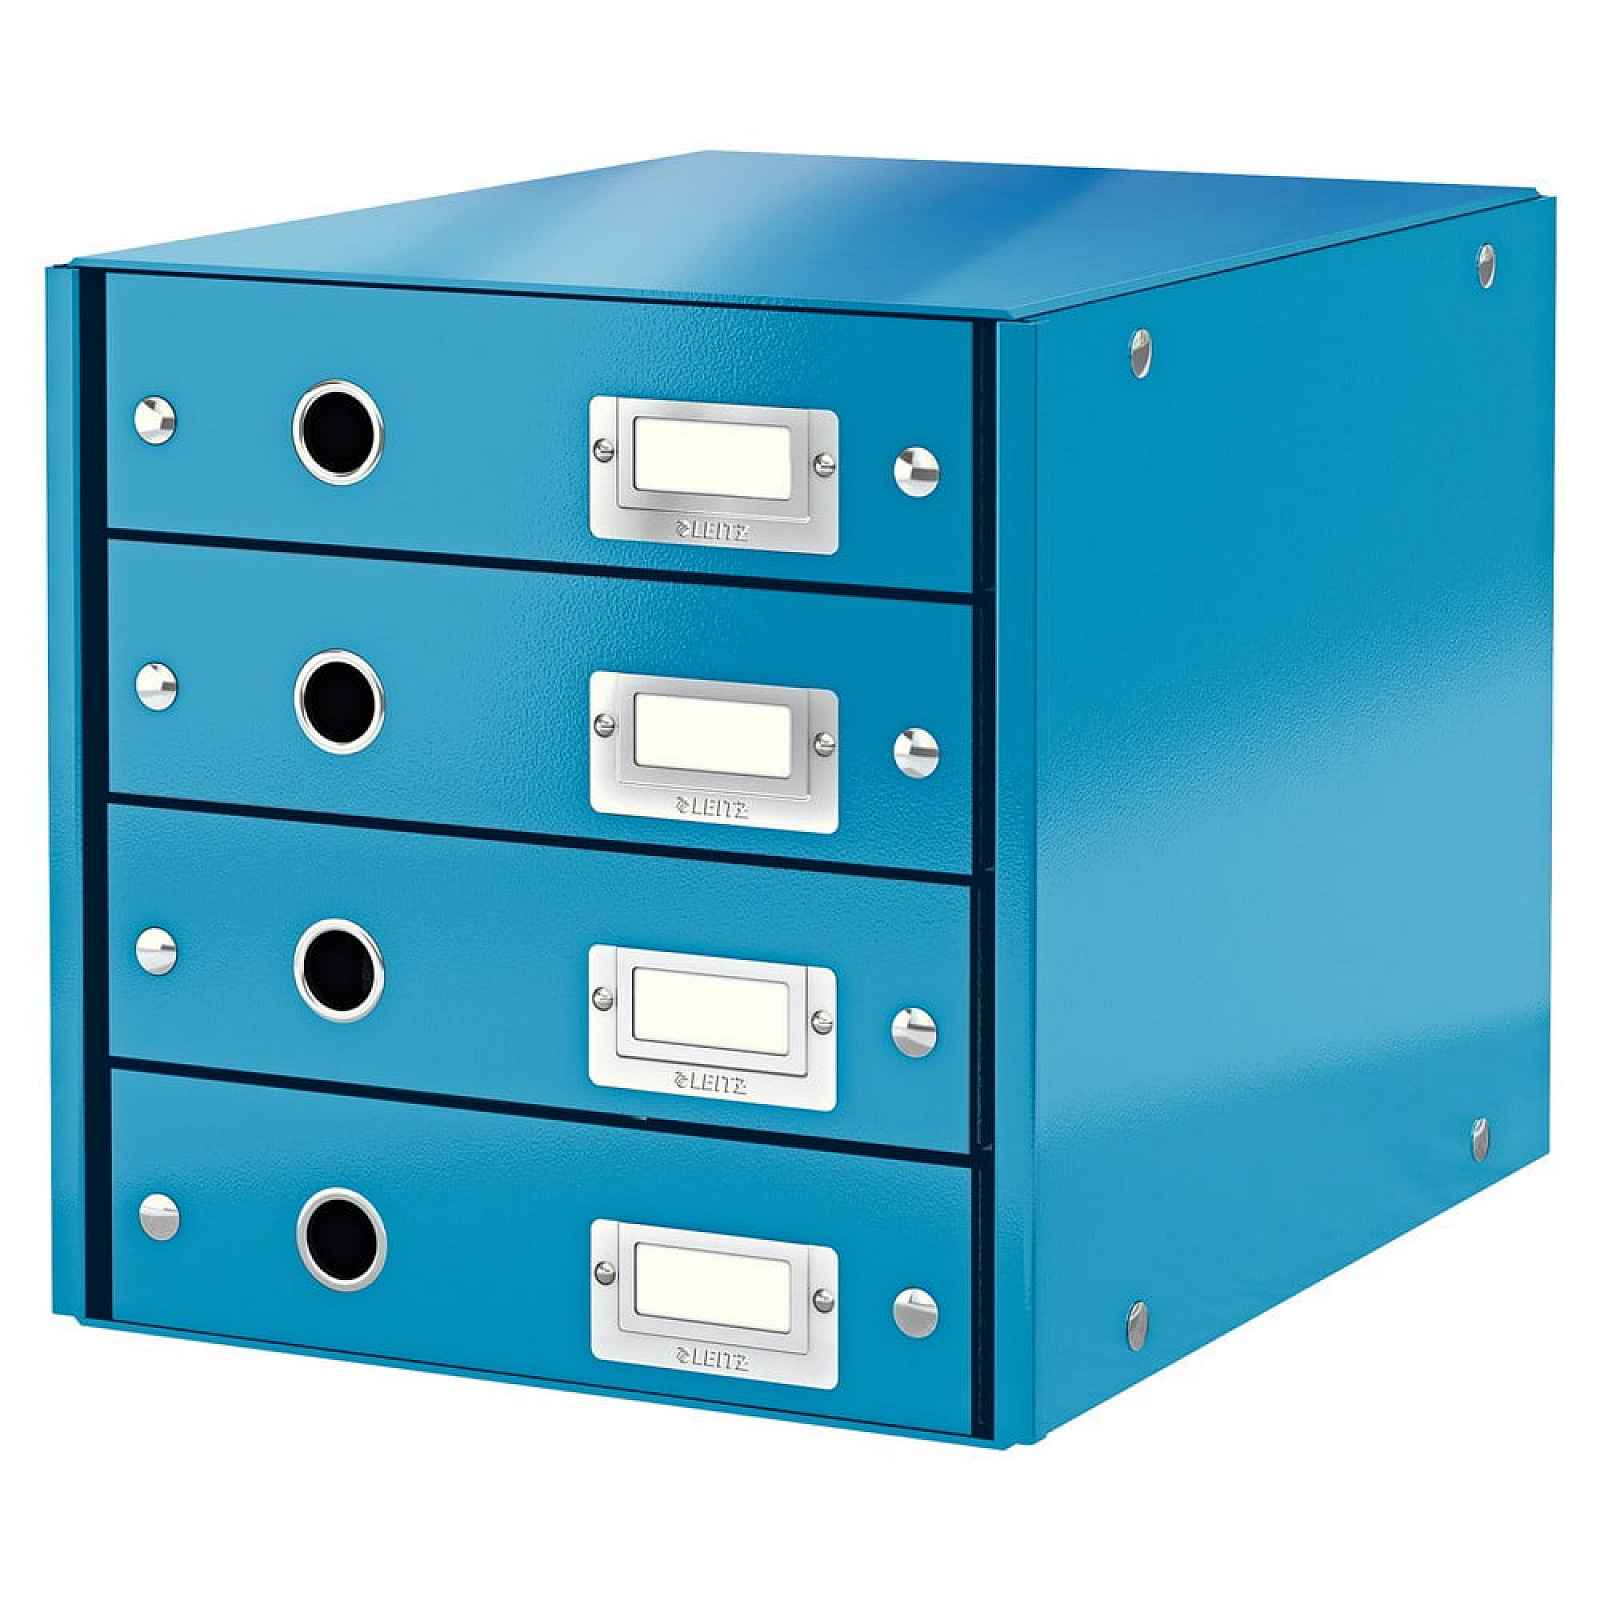 Modrý box se 4 zásuvkami Leitz Office, délka 36 cm